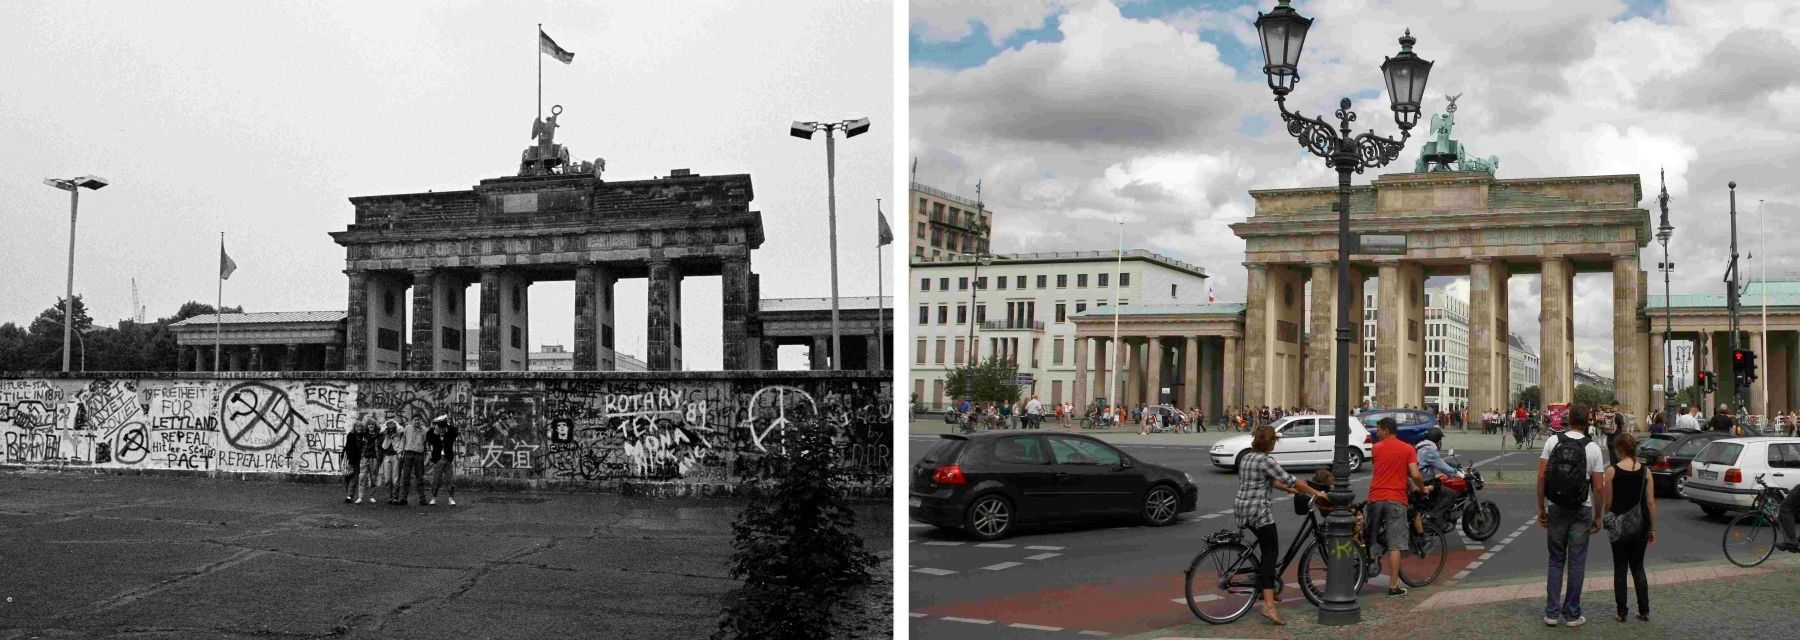 Фрг и гдр берлинская стена. Западный Берлин Бранденбургские ворота стена. Берлин 1961-1989. ФРГ ГДР Западный Берлин. Бранденбургские ворота 1989.